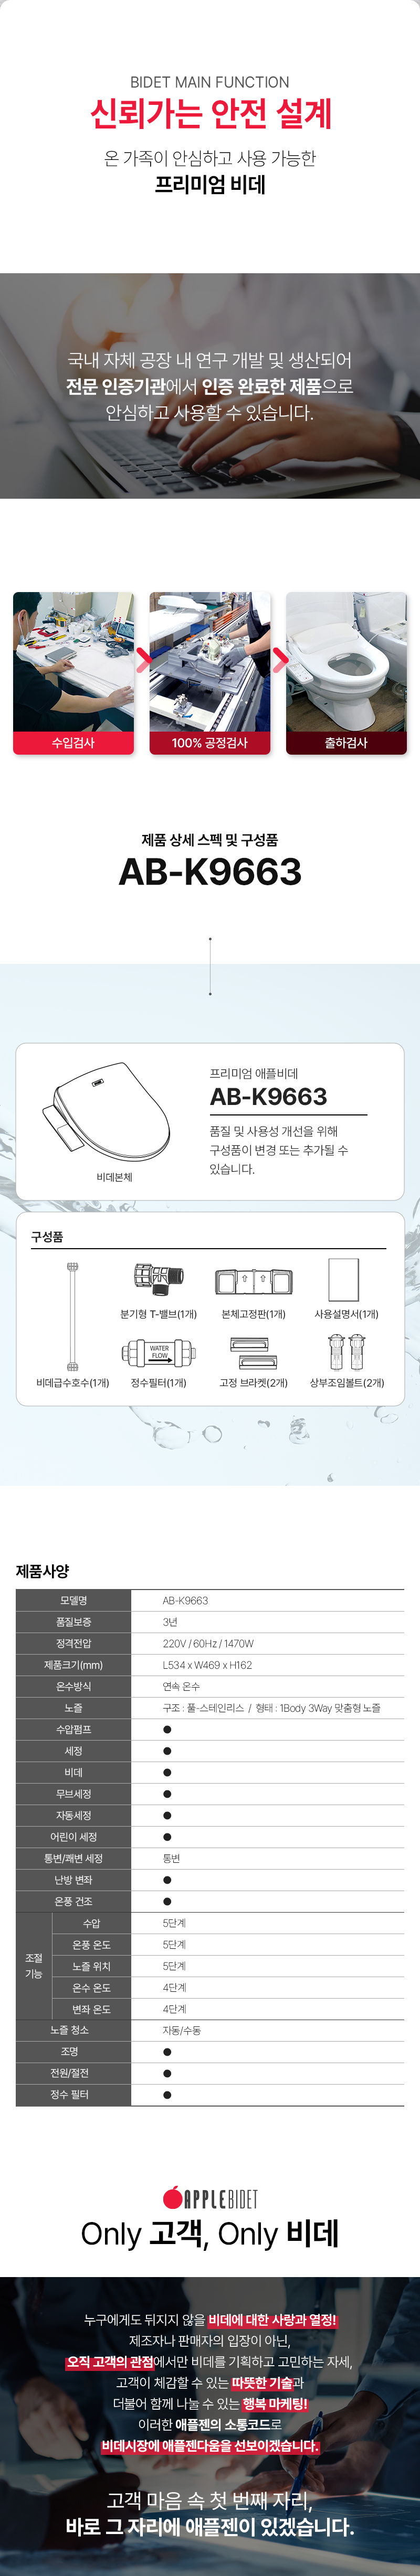 AB-K9663_detail_06_092040.png